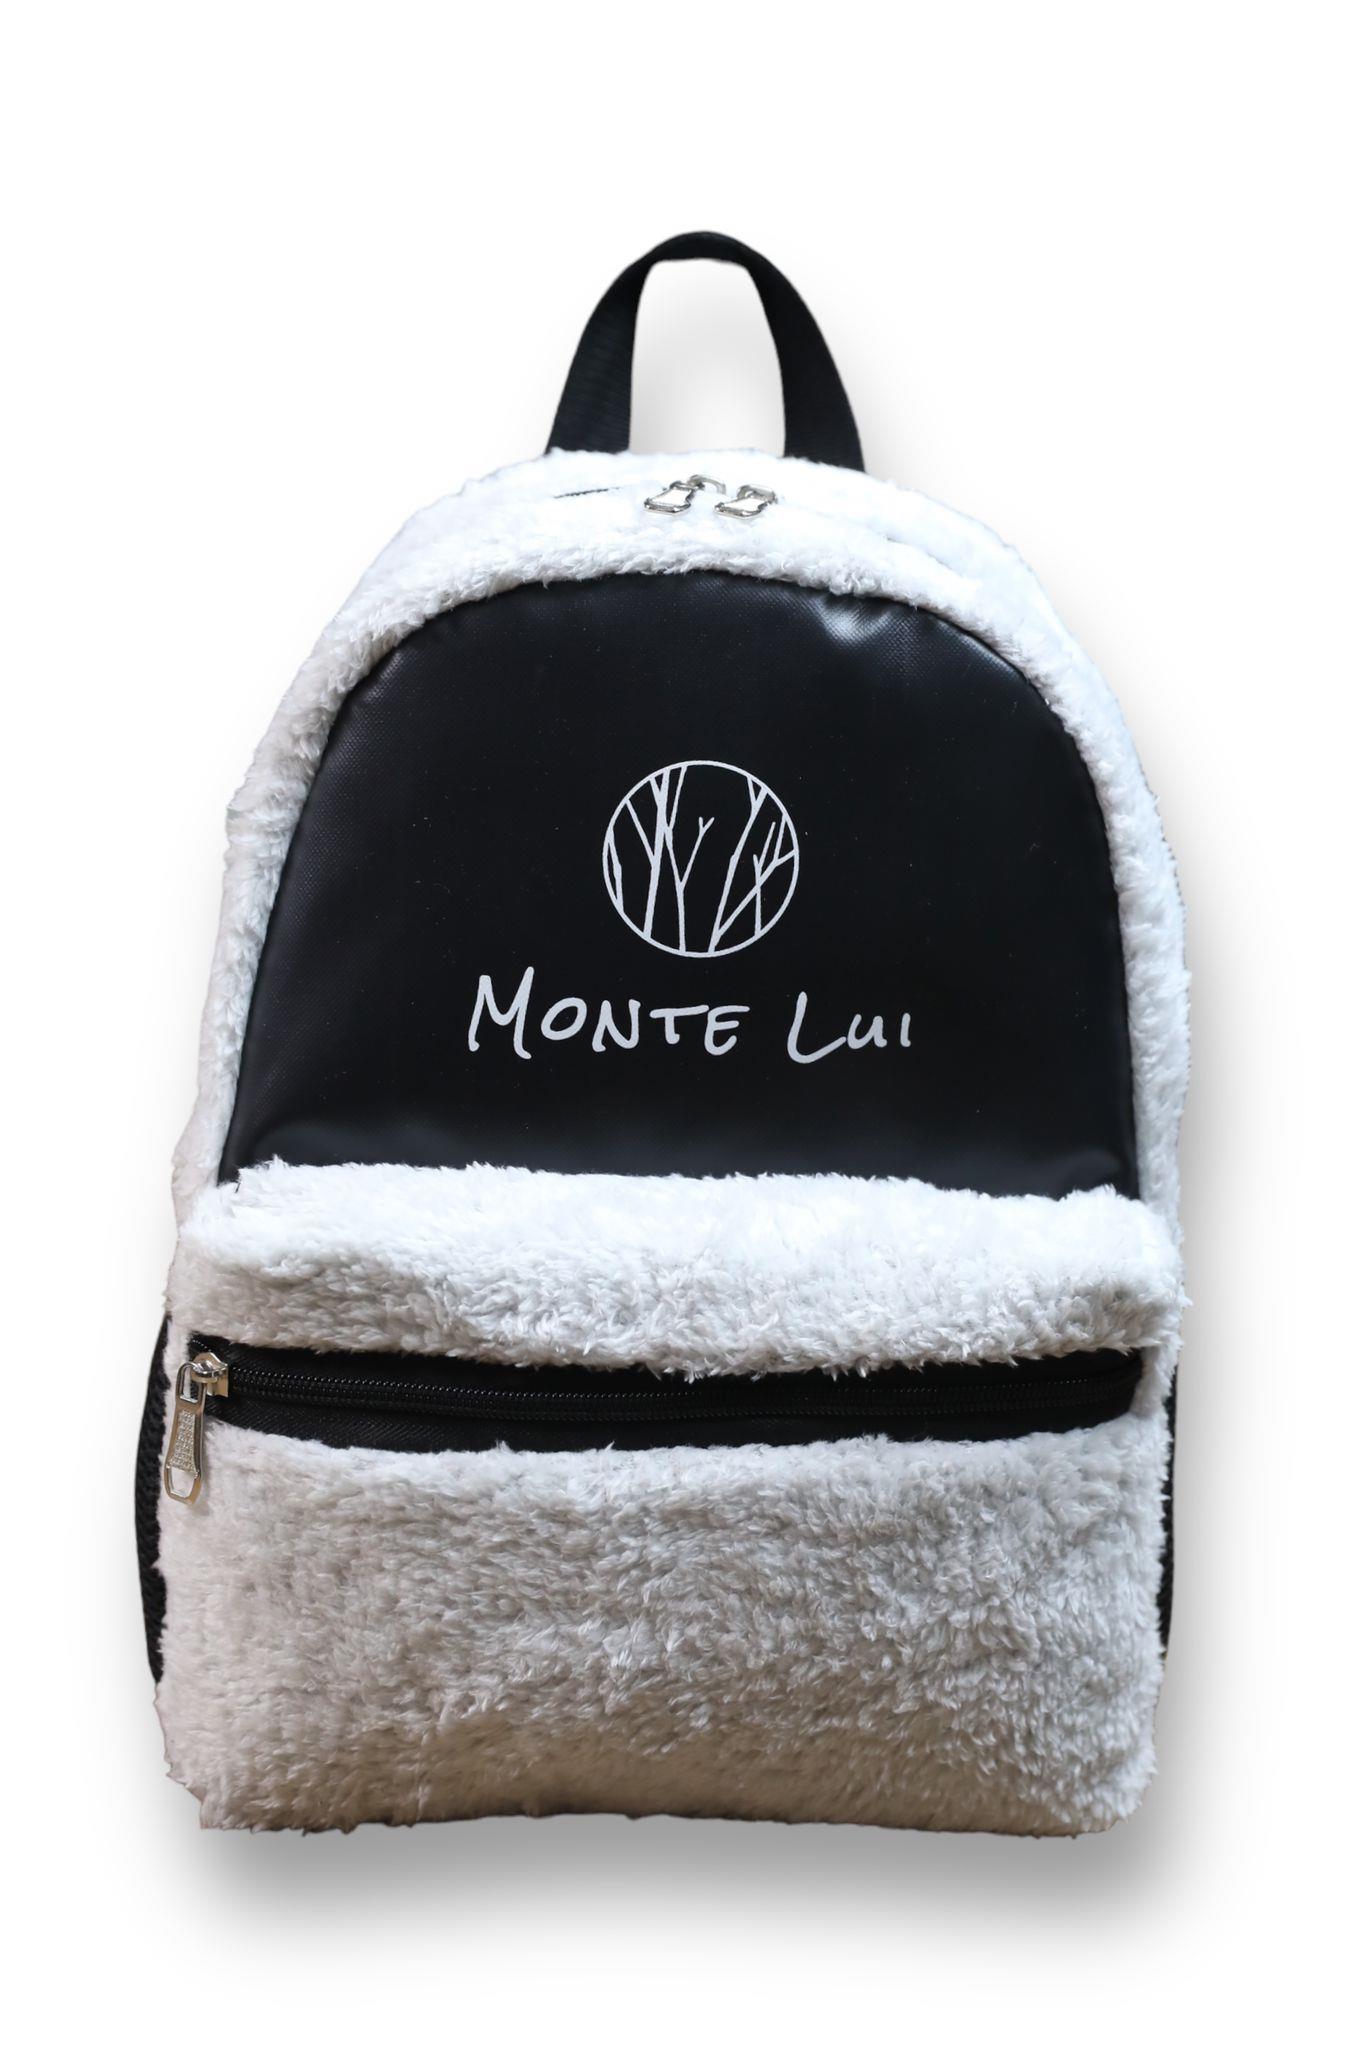 Monte Lui - Kadın Çanta Modelleri ve Fiyatları